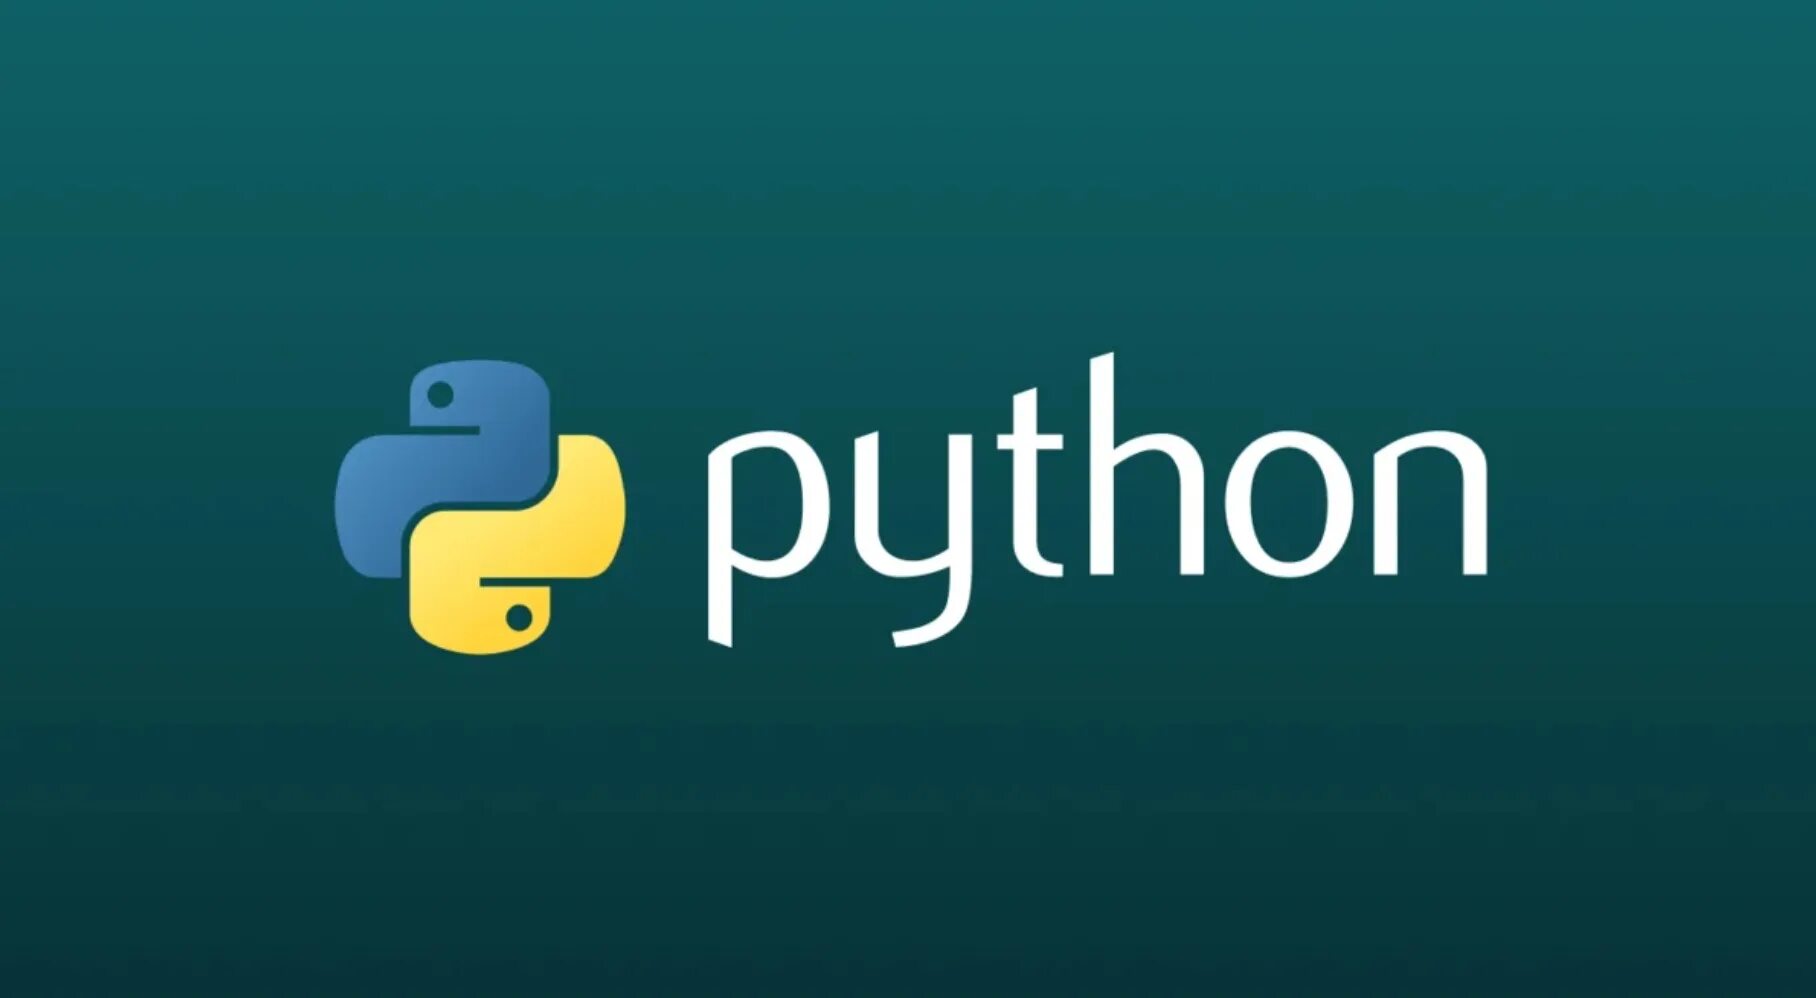 Логотип языка python. Пайтон язык программирования. Язык программирования Python. Питон программирование. Пион язык программирования.